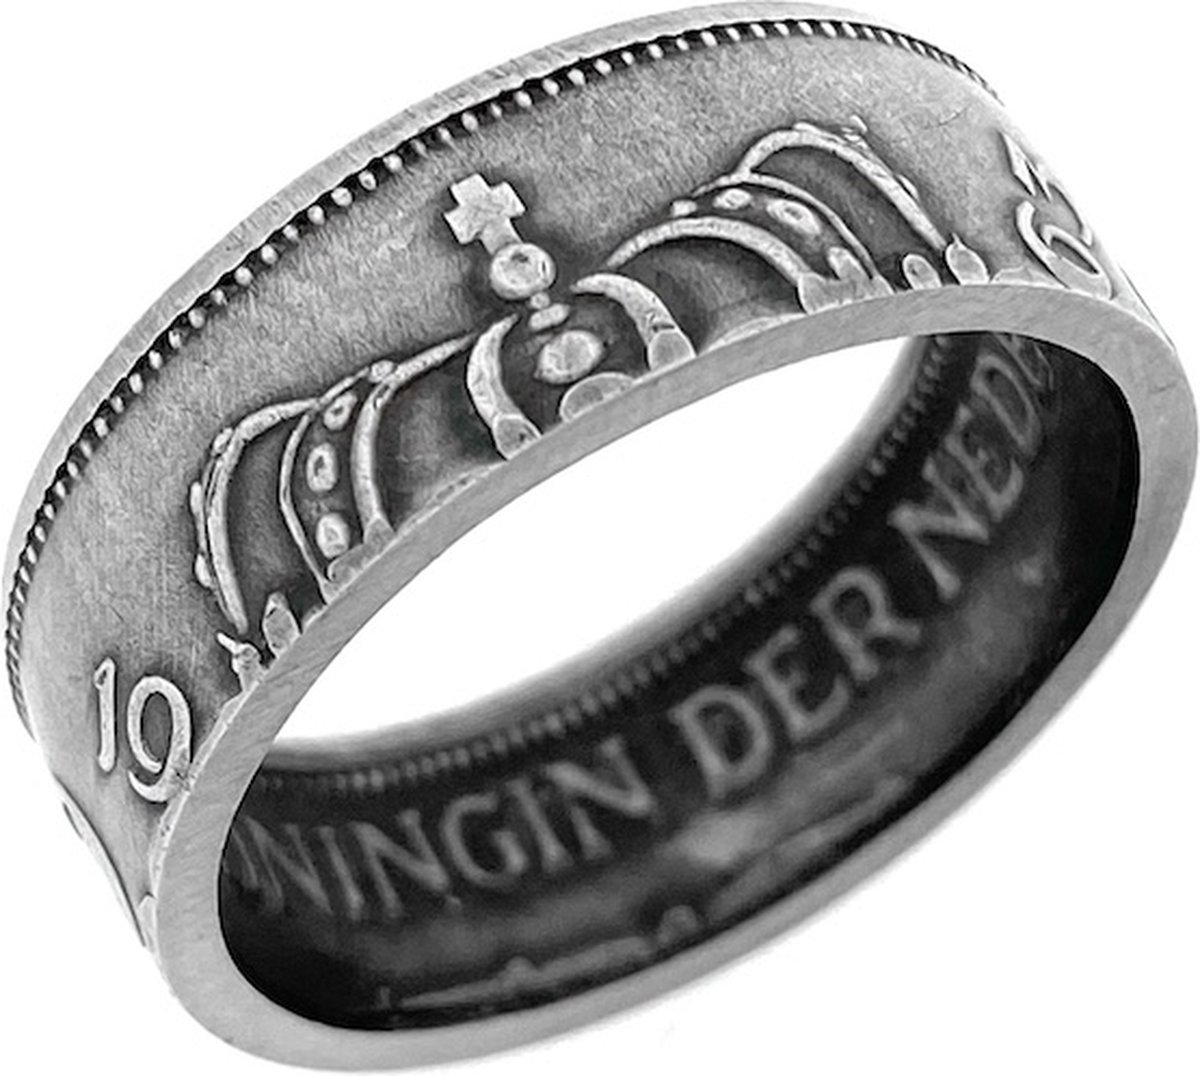 Zilveren Juliana Rijksdaalder Muntring - Maat: NL 19 /EU 60 - Unieke ring gemaakt van een originele zilveren rijksdaalder uit de periode 1954/1966